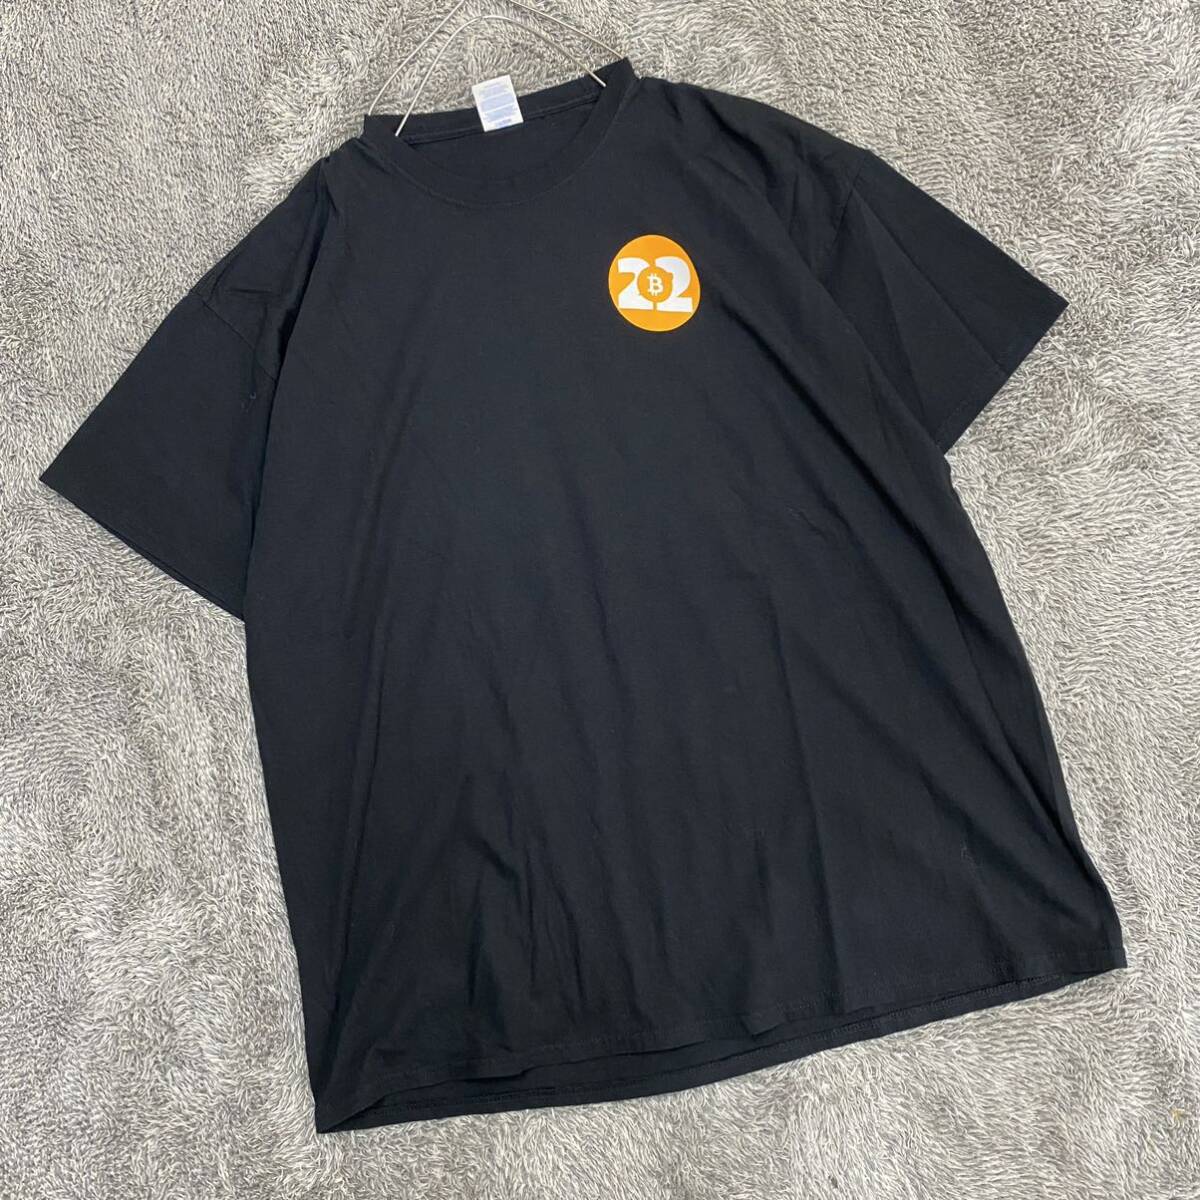 PORT&COMPANY ポートアンドカンパニー BitCoin Tシャツ 半袖カットソー サイズ2XL ブラック 黒 メンズ トップス 最落なし （V19）_画像1